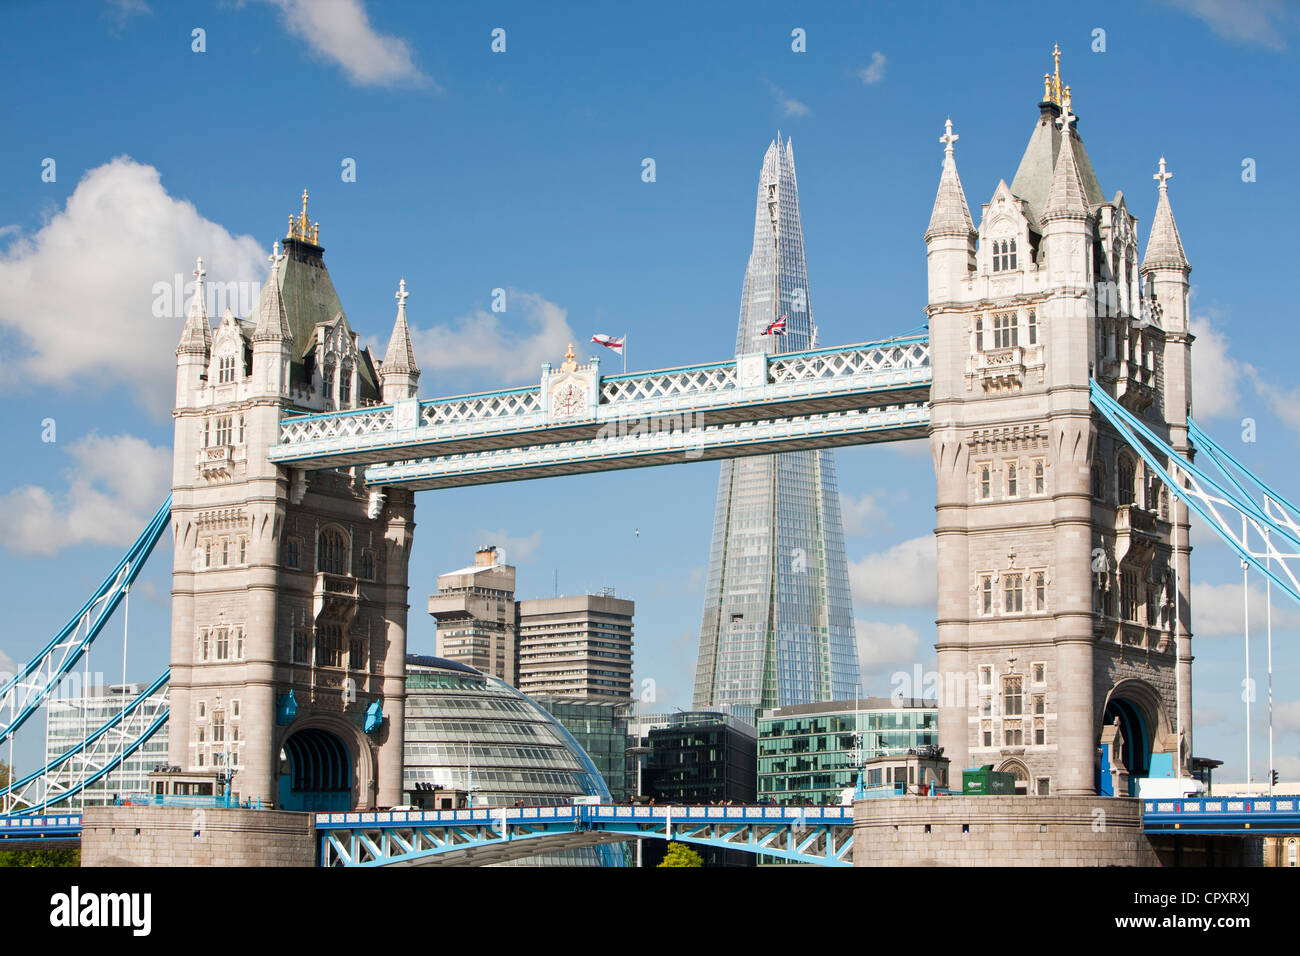 Il Tower Bridge e la Shard a Londra, Regno Unito. La Shard a 310m o più di 1000 metri di altezza, è l'edificio più alto d'Europa. Foto Stock